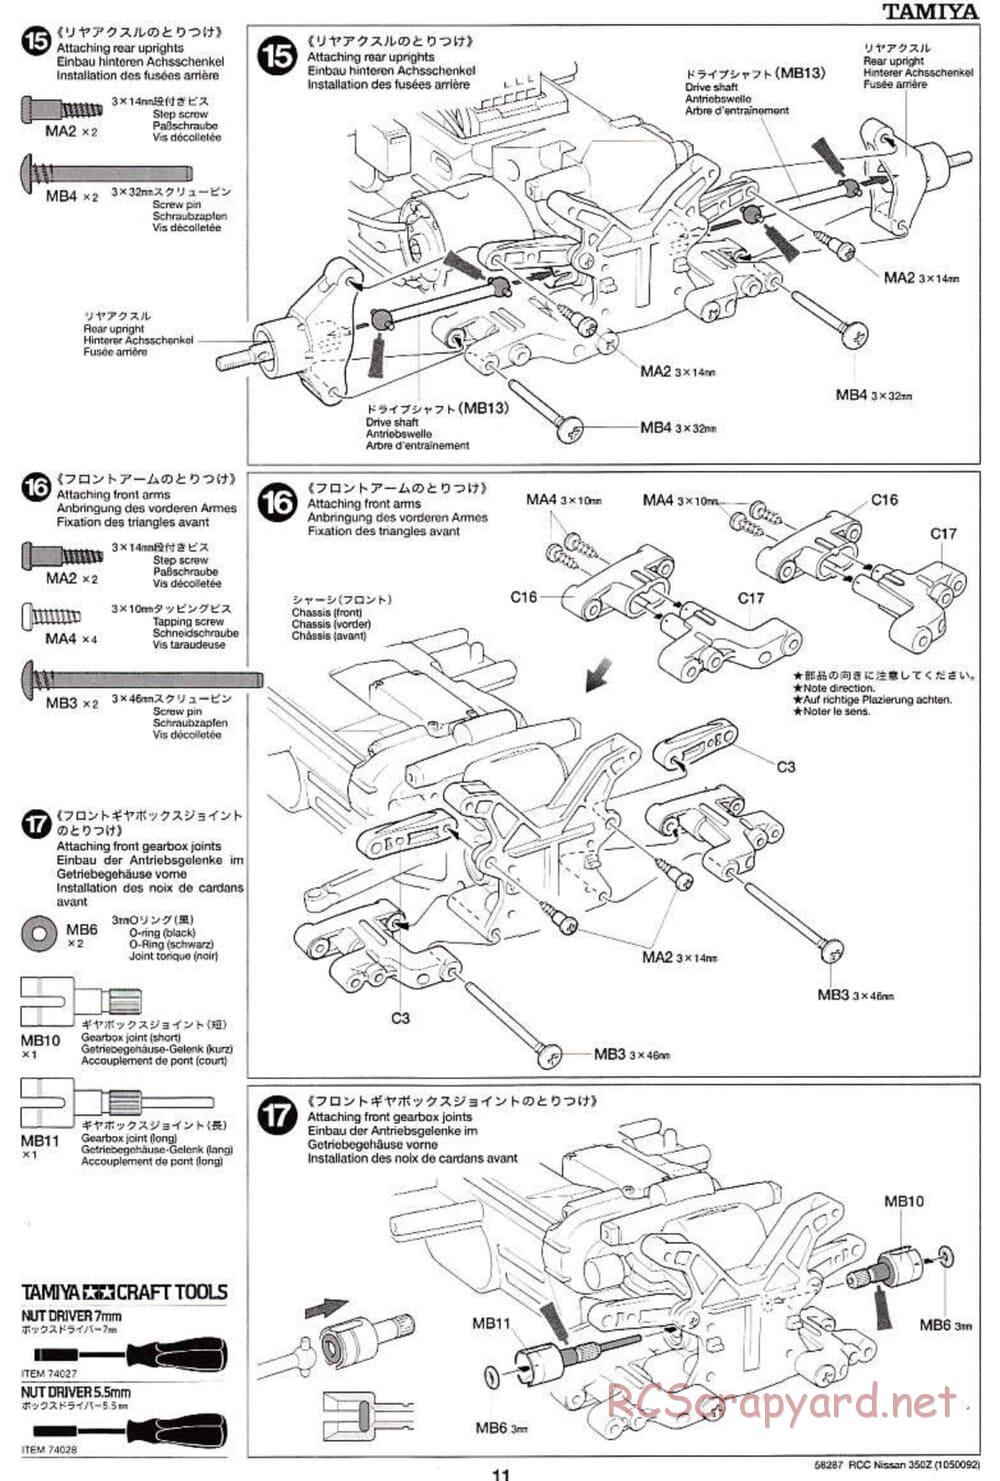 Tamiya - Nissan 350Z - TL-01 Chassis - Manual - Page 11